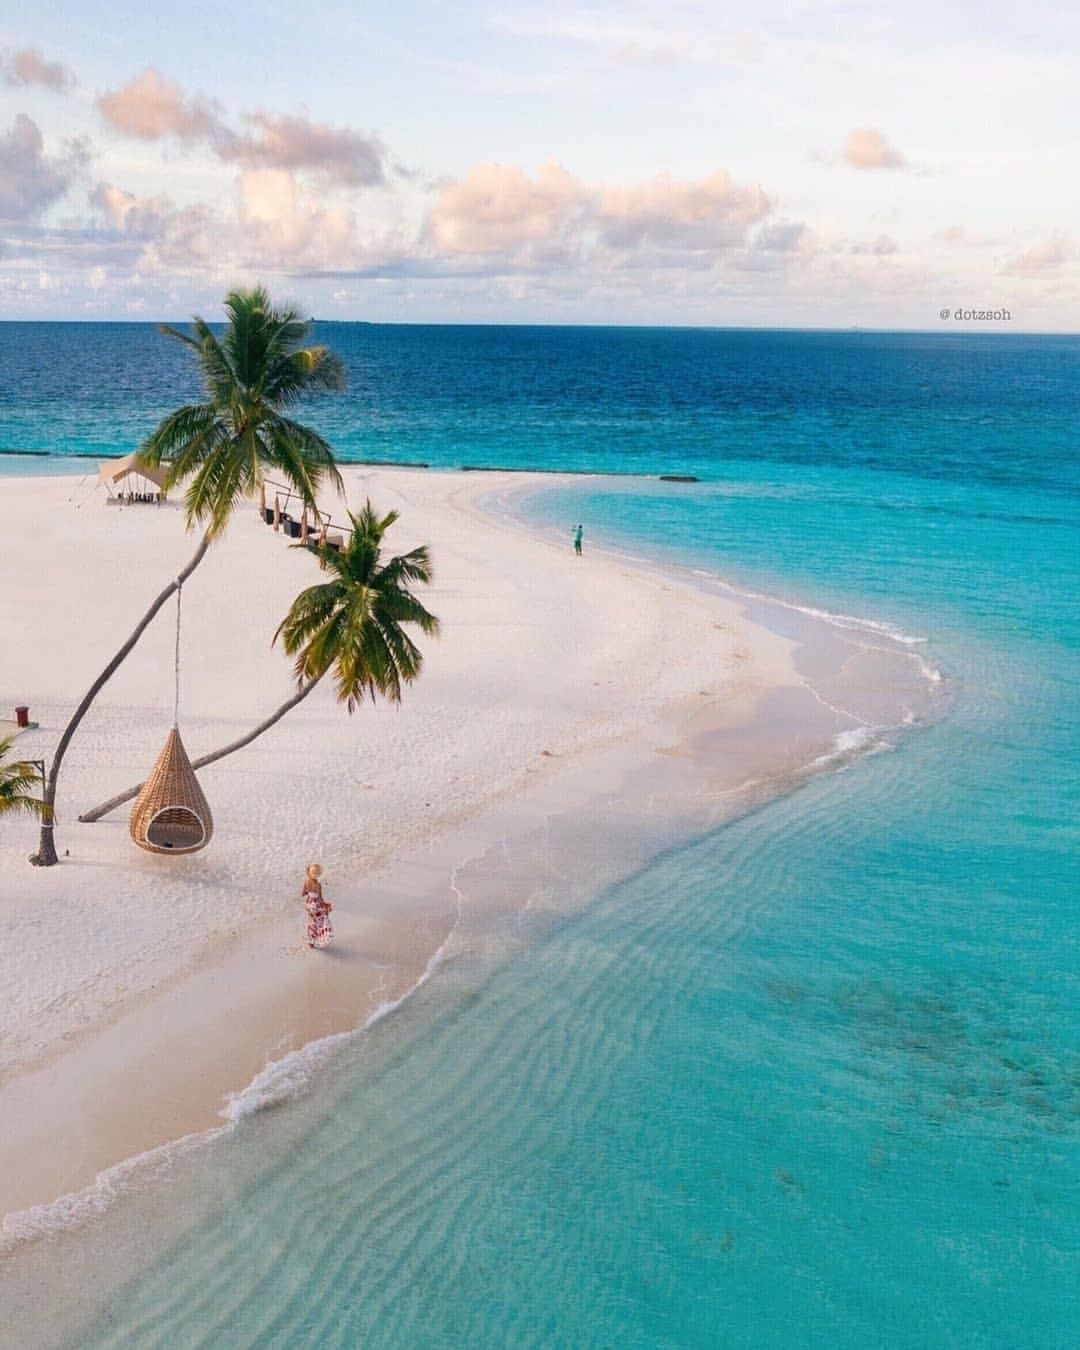 1080x1350, 108 Kb / Мальдивы, океан, берег, песок, кресло, люди, небо, облака, пальмы